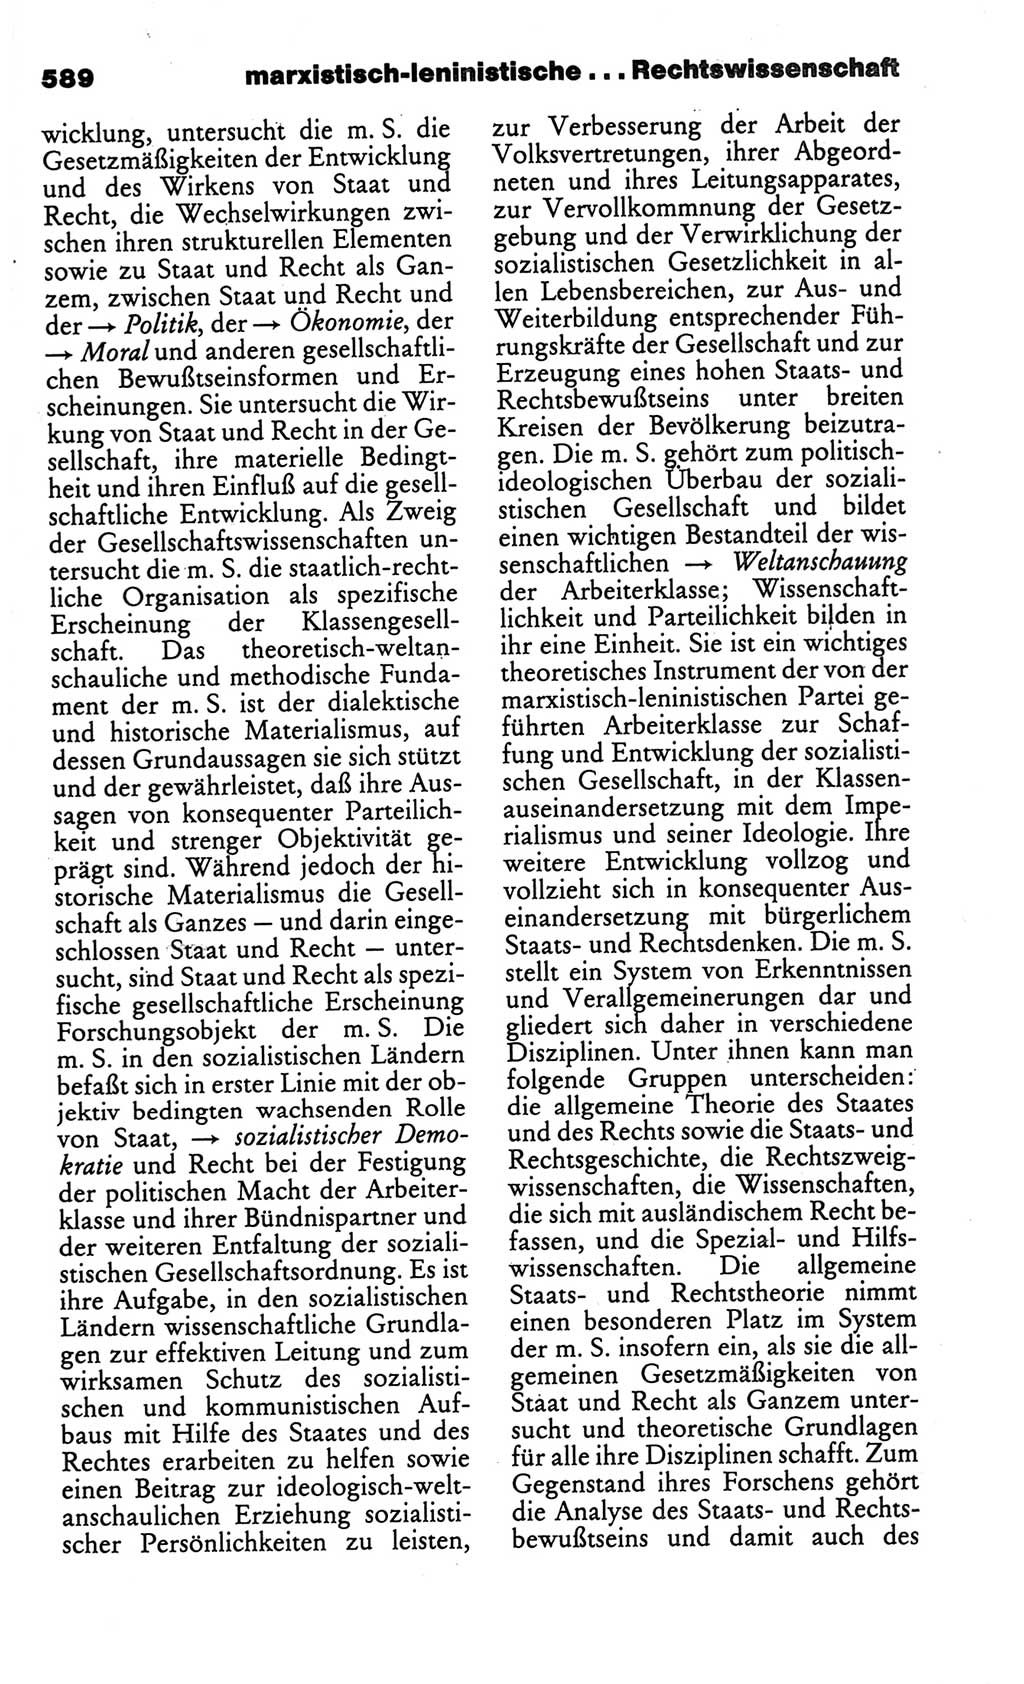 Kleines politisches Wörterbuch [Deutsche Demokratische Republik (DDR)] 1986, Seite 589 (Kl. pol. Wb. DDR 1986, S. 589)